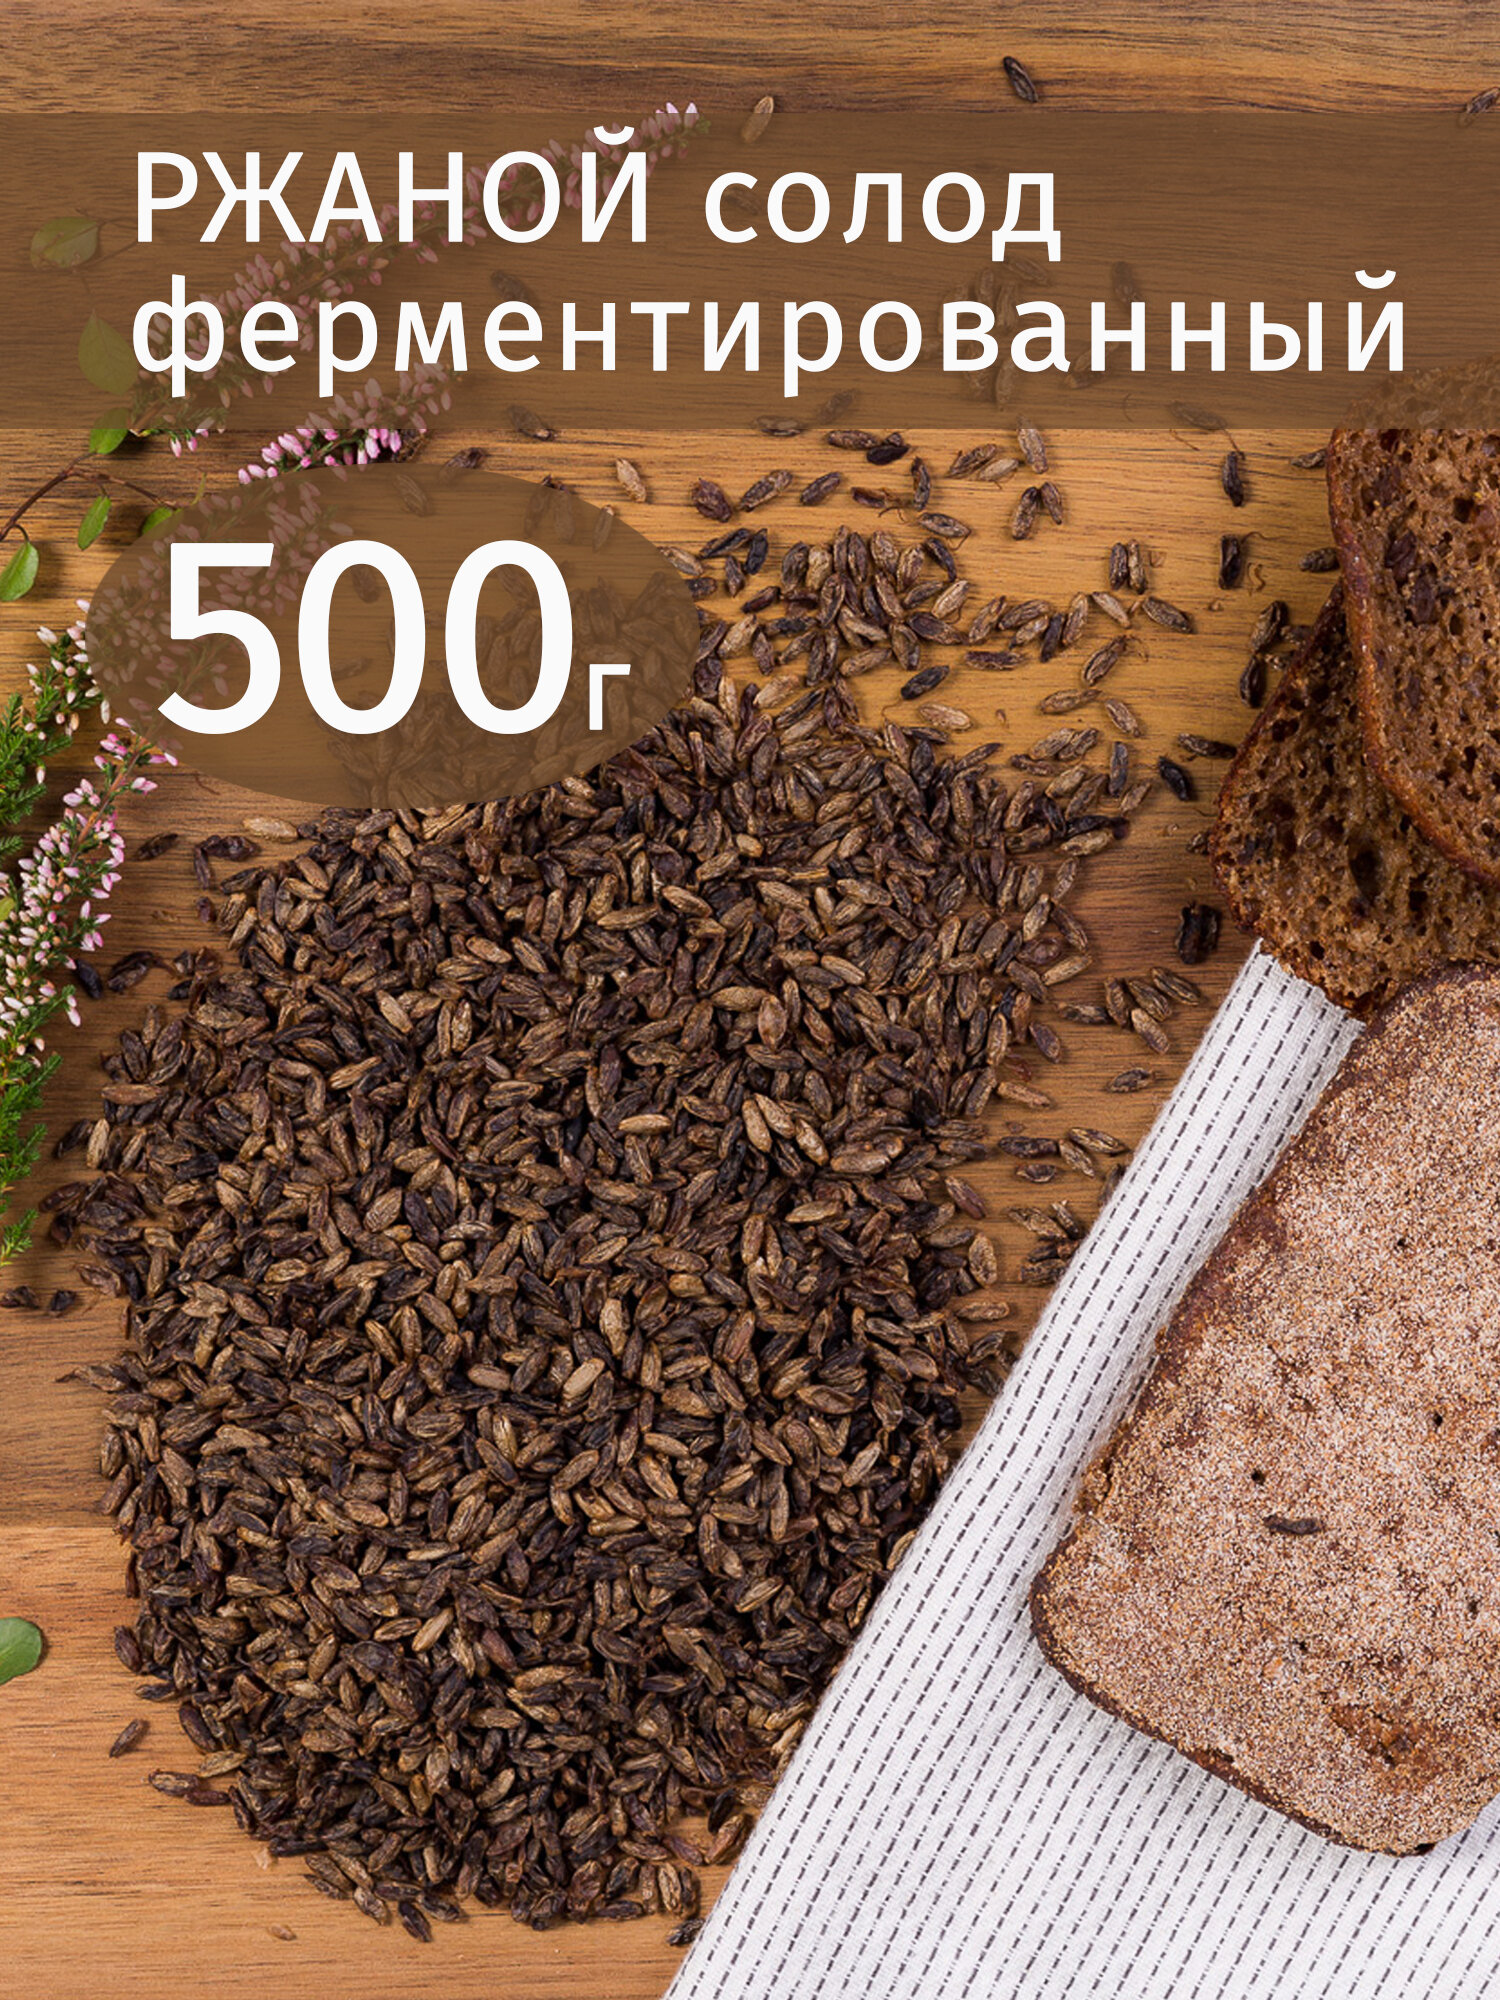 Ржаной ферментированный зерновой солод 500 гр